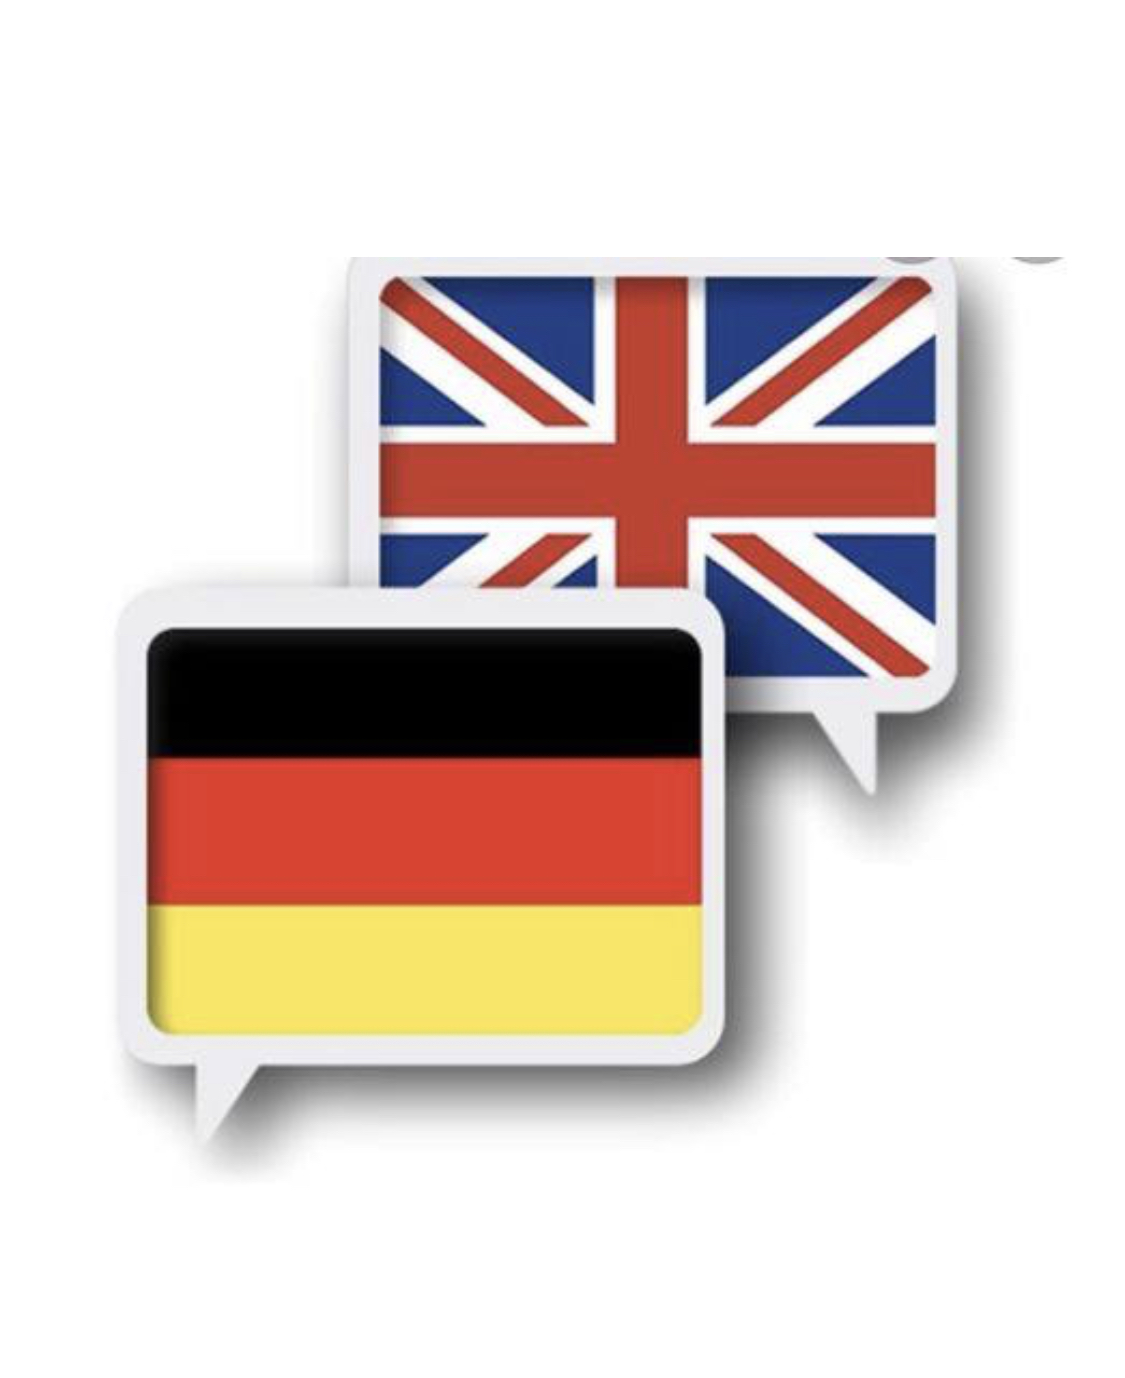 Германия на английском. Английский и немецкий. Иностранные языки английский немецкий. Английский и немецкий флаг. Английский немецкий французский языки.